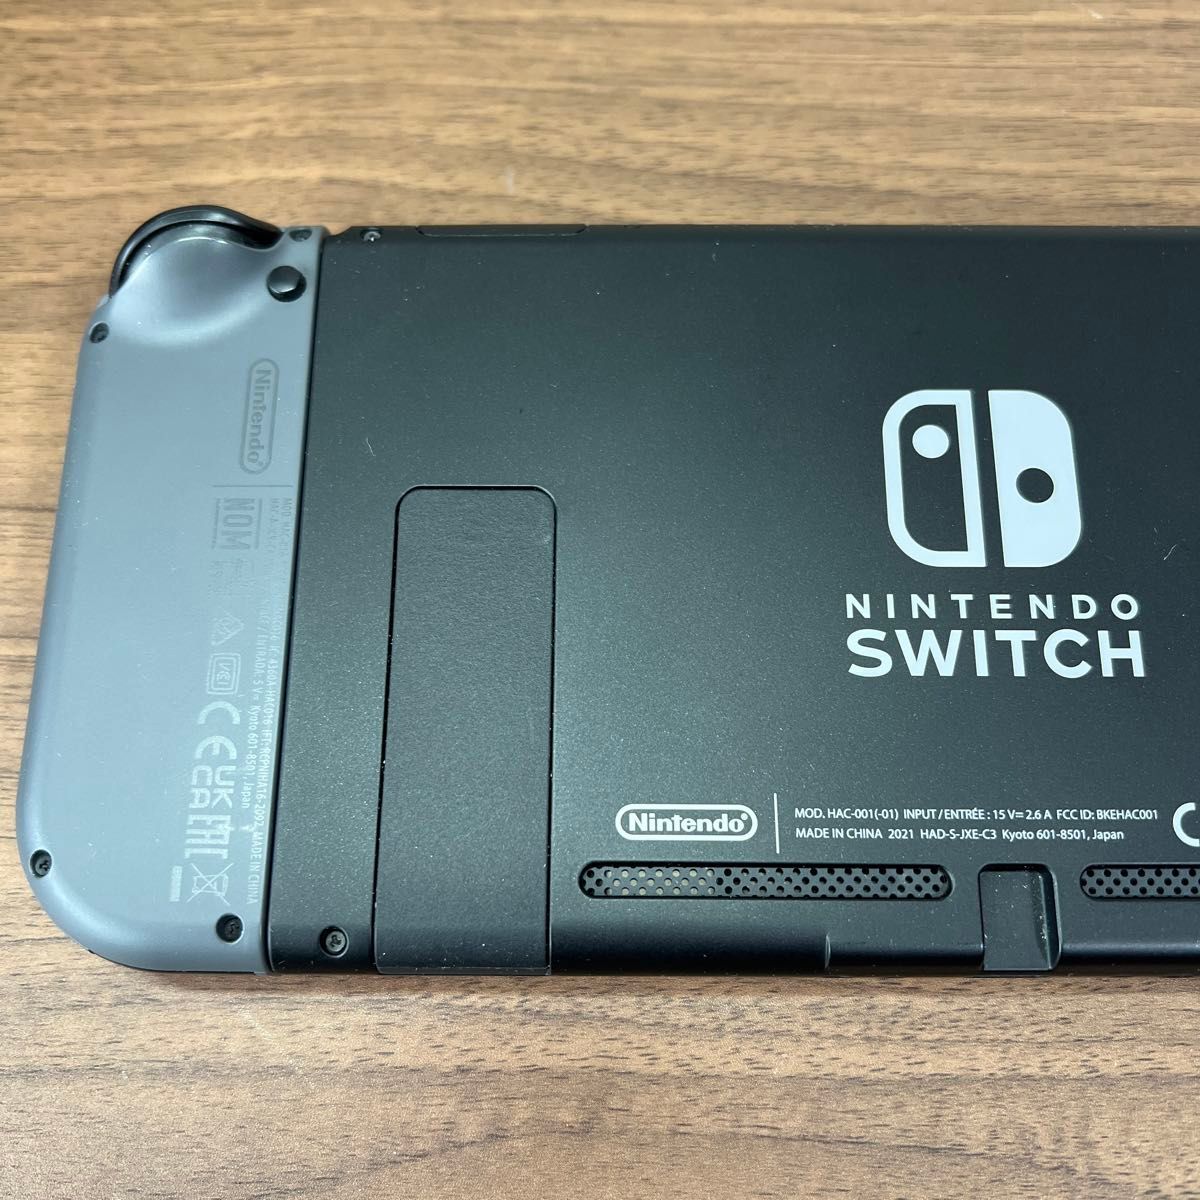 ★本体良品・2021年製★ Nintendo Switch HAD バッテリー強化型